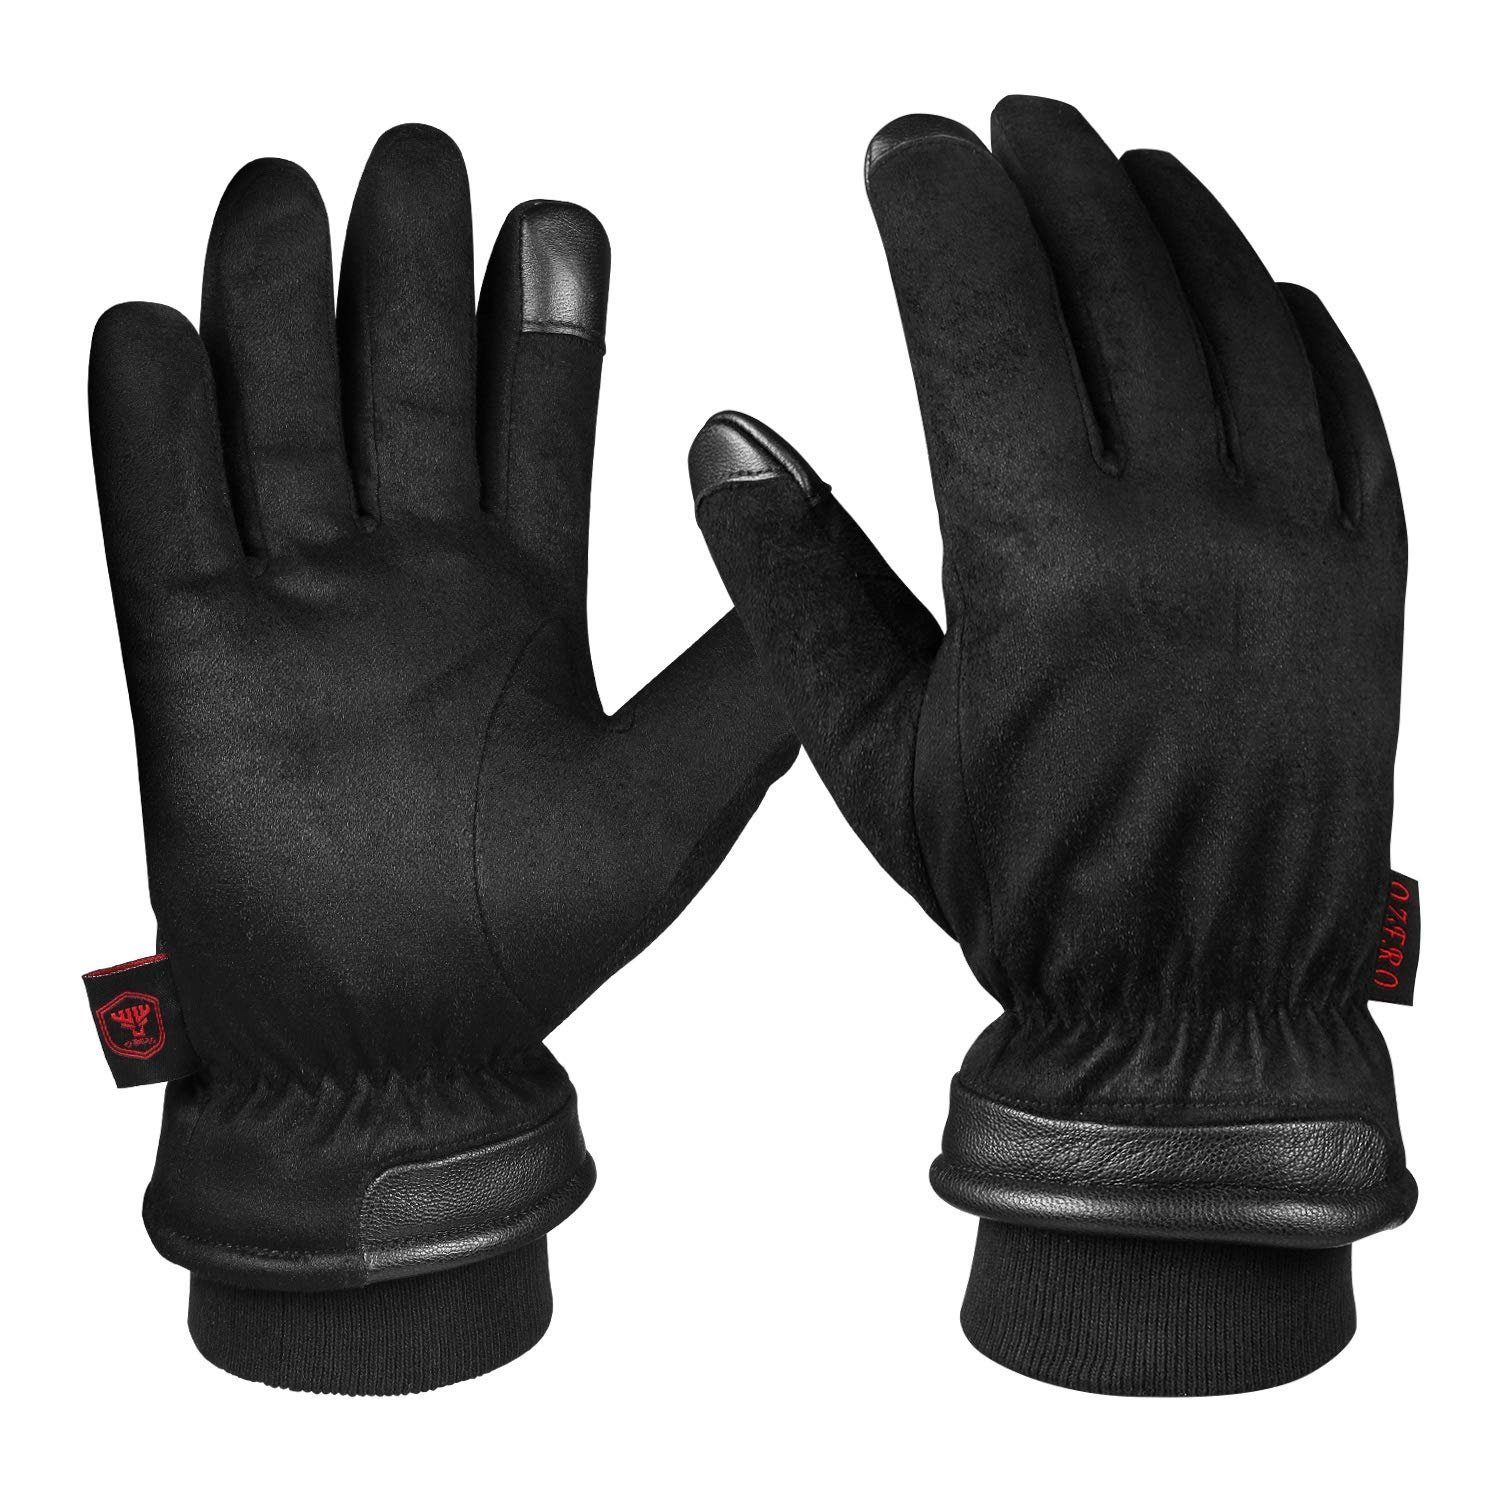 Haiaveng Multisporthandschuhe Herren Winterhandschuhe, wasserdichte Handschuhe für Sport und Arbeit